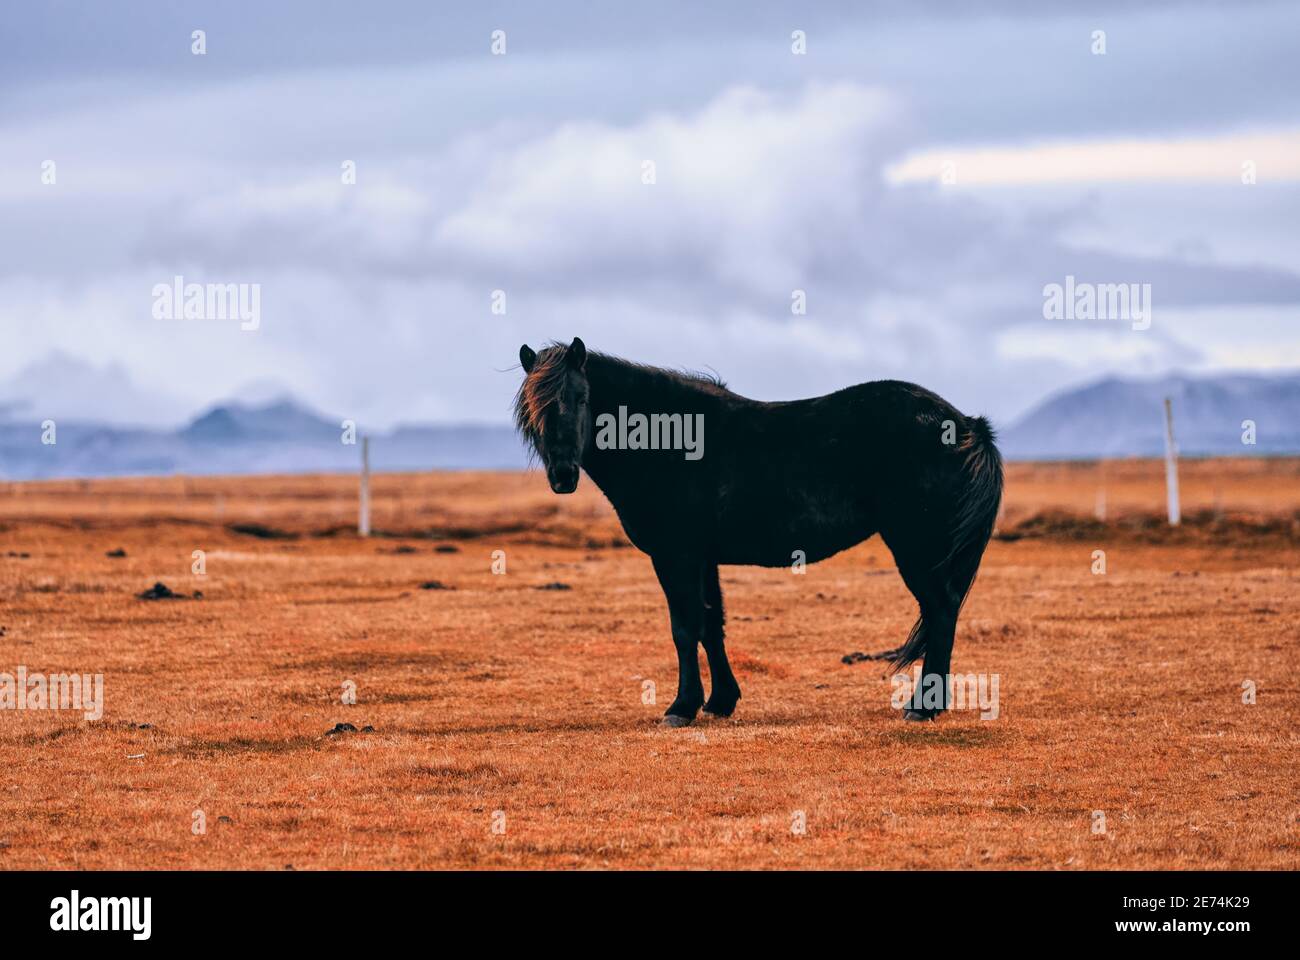 Iconico cavallo islandese nero che si erge su un terreno pianeggiante nell'Islanda occidentale, con spettacolari nuvole, vulcani e glasieri all'orizzonte lontano. Foto Stock